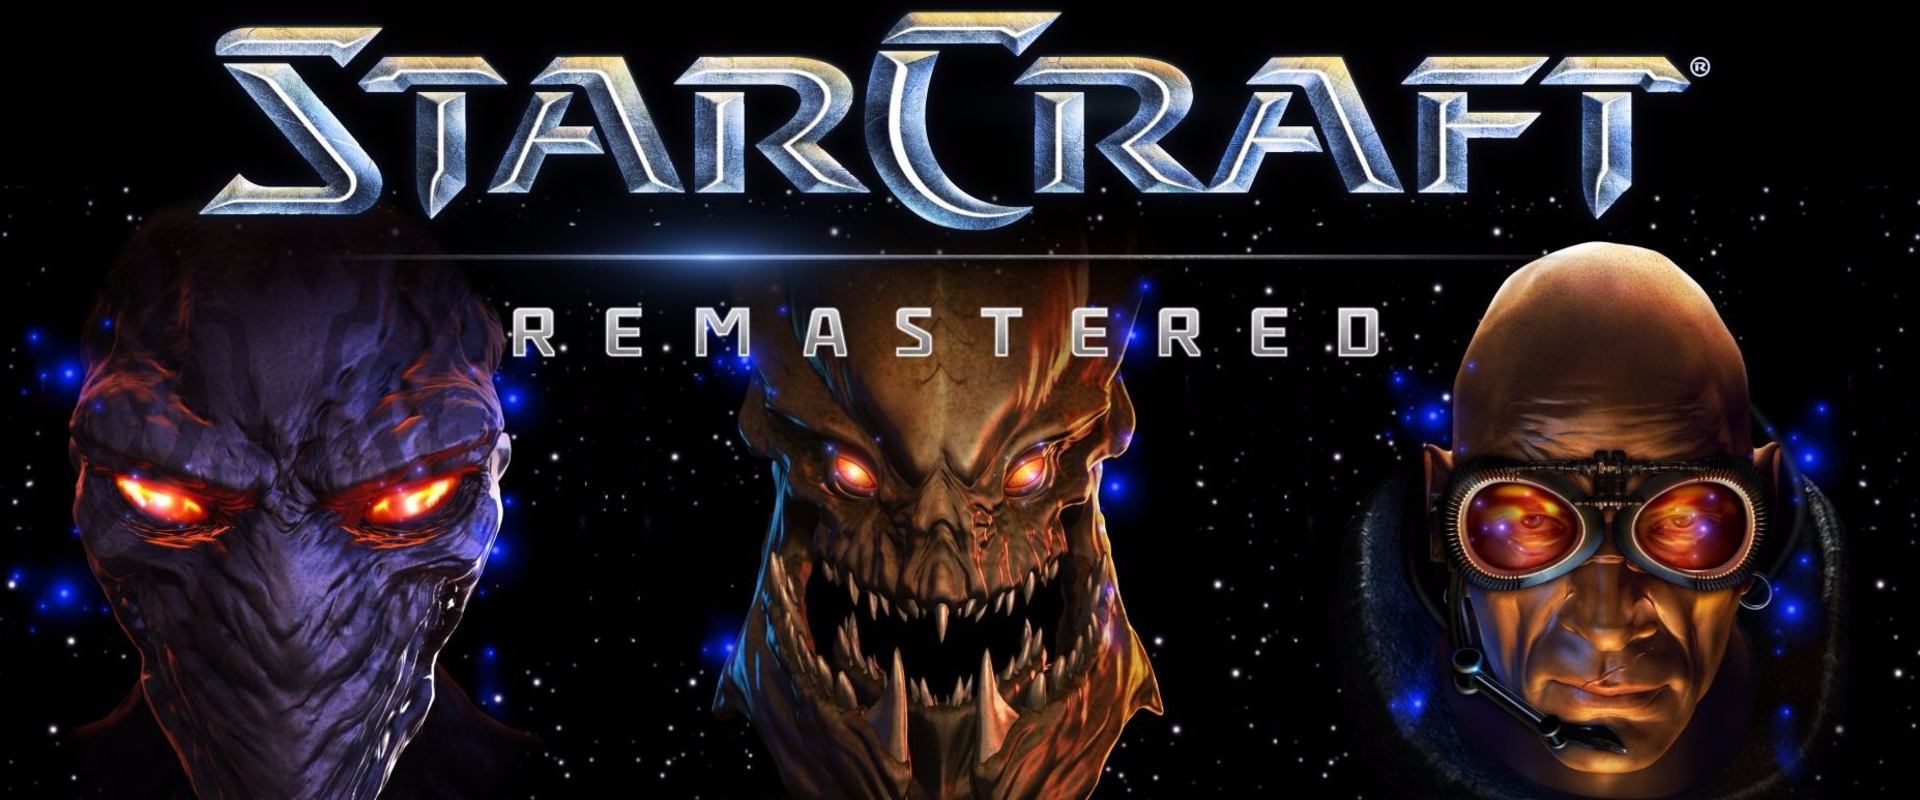 Ismerd meg a StarCraft sikertörténetét!